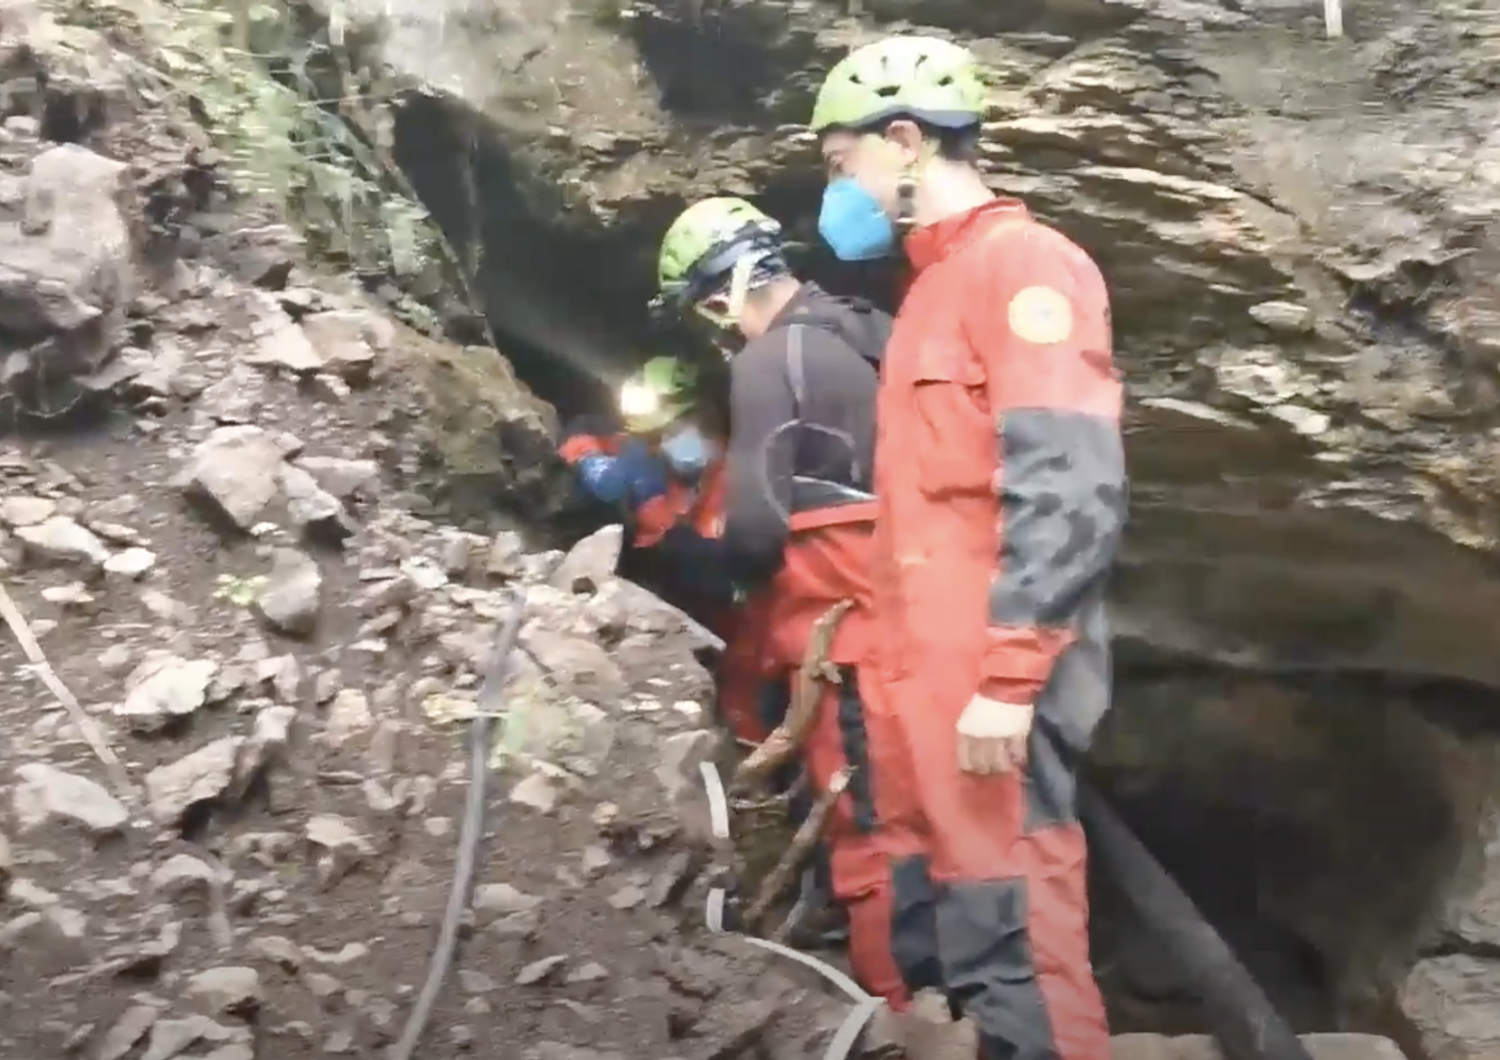 Recupero speleologi intrappolati grotta Majella